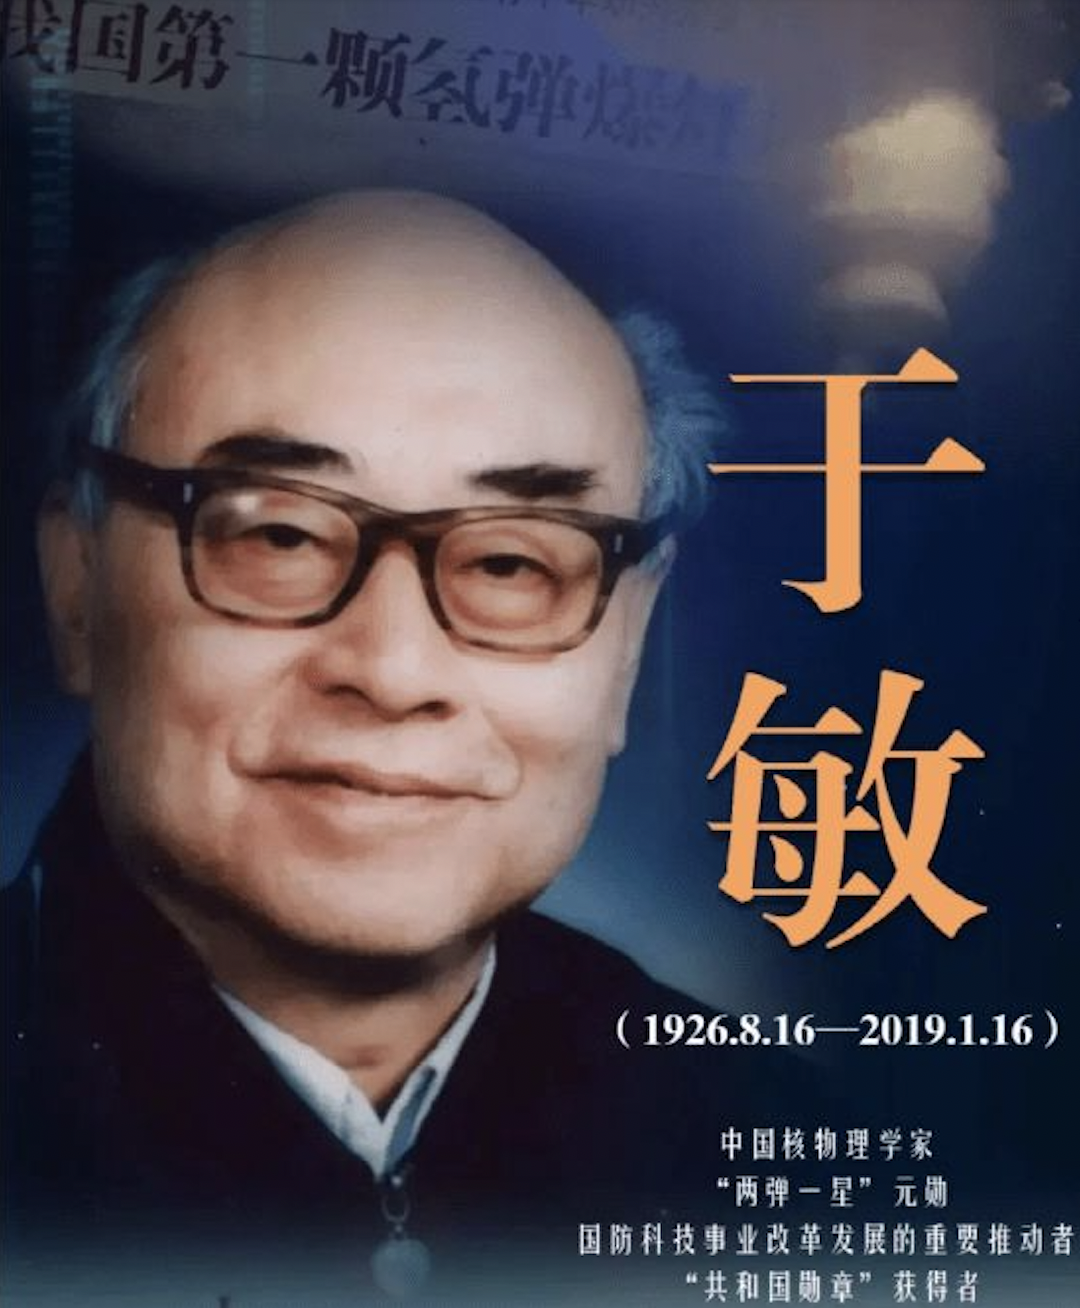 他是中国氢弹之父他的名字曾绝密28年他叫于敏